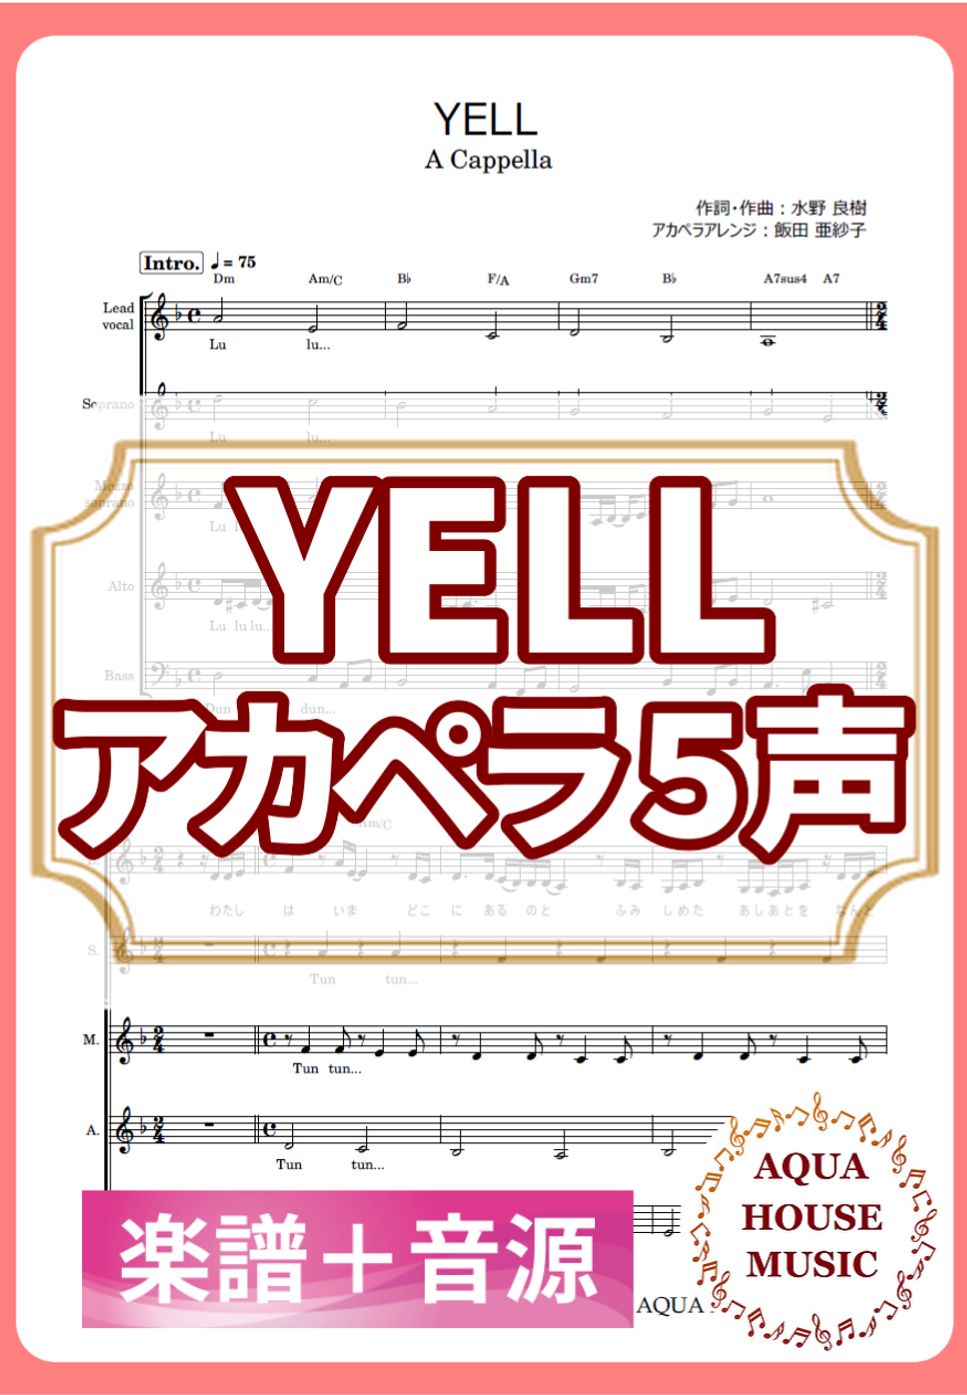 いきものがかり - YELL (アカペラ楽譜＋練習音源セット販売) by 飯田 亜紗子